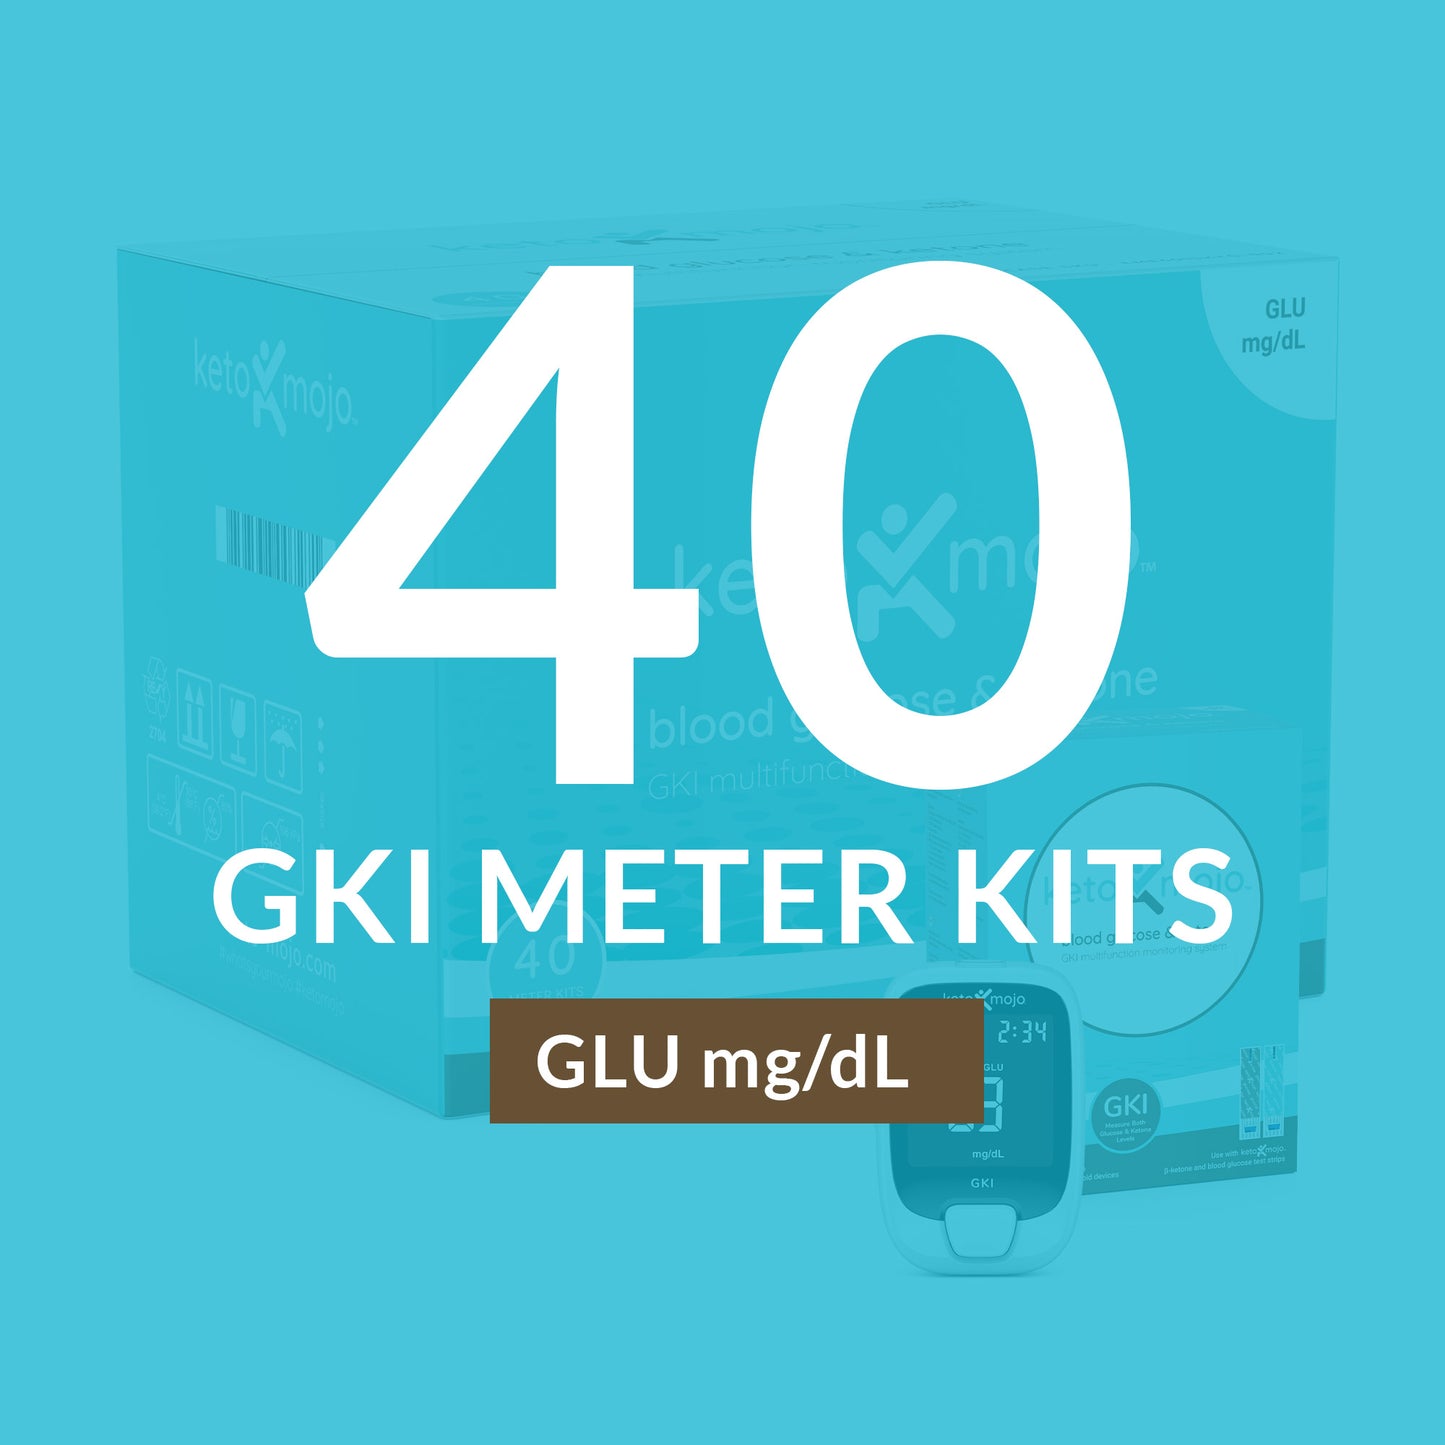 مقياس ماستر كيس GKI-Bluetooth - مجموعة بدء التشغيل الأساسية (40 عبوة) (مليمول / لتر)